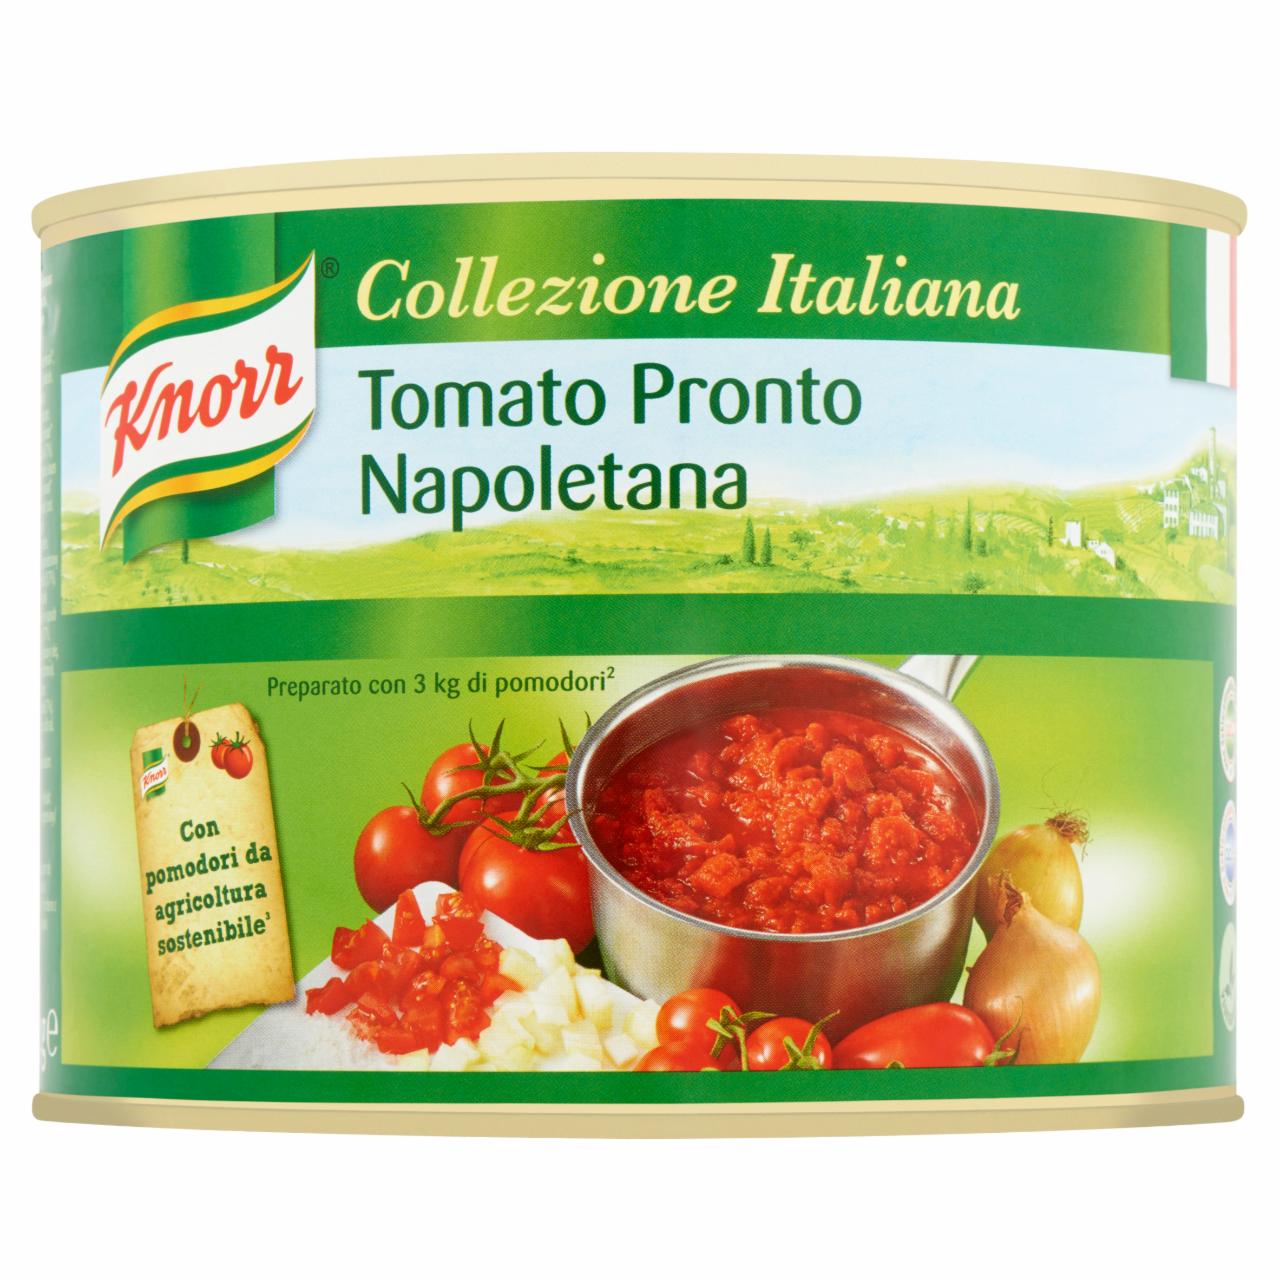 Képek - Knorr Tomato Pronto Napoletana fűszeres paradicsomvelő 2 kg